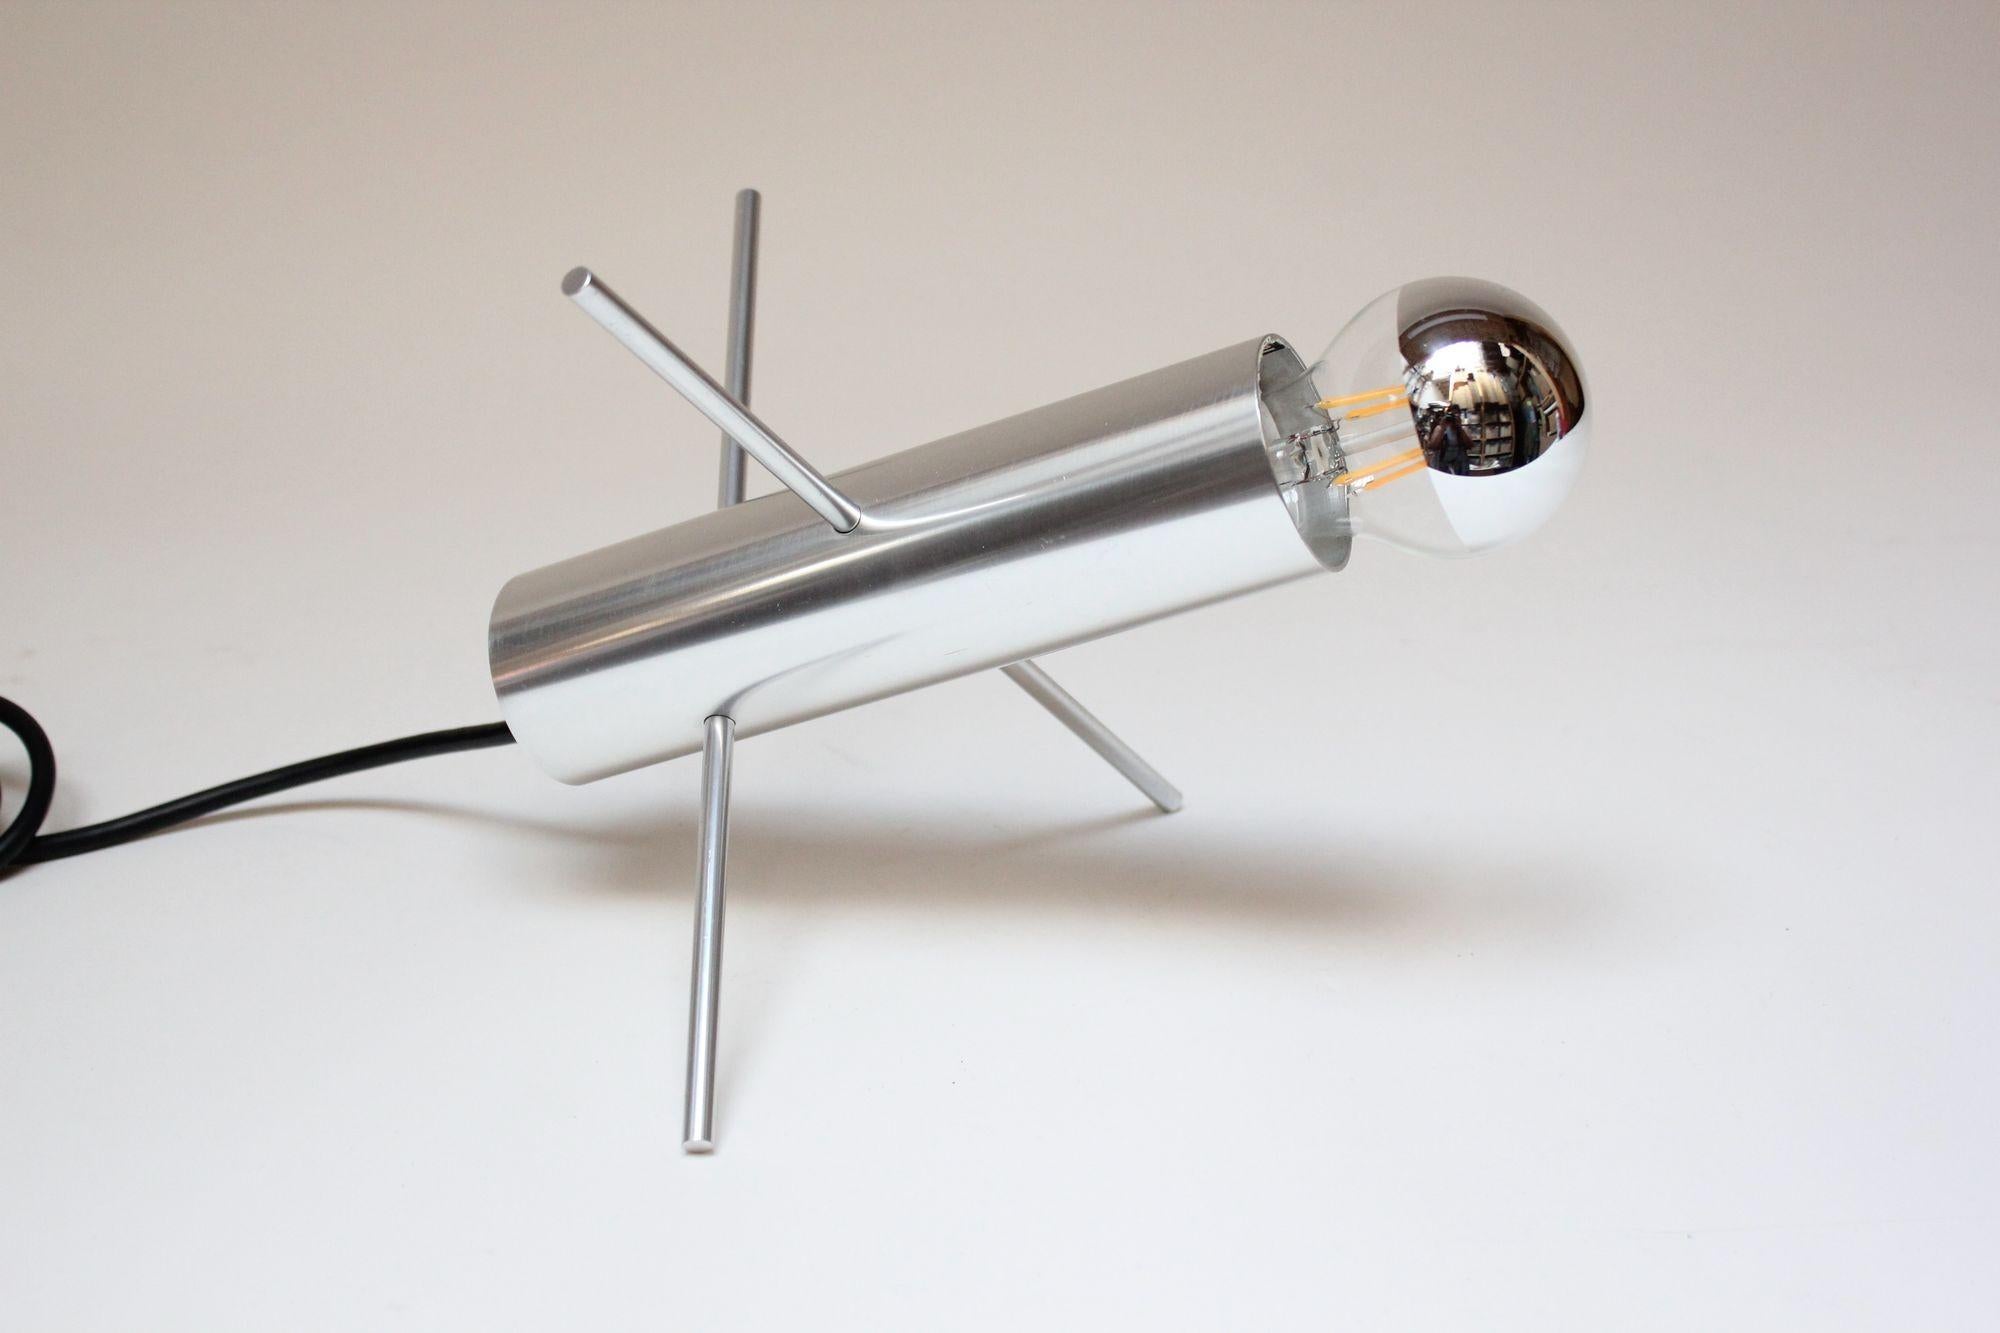 Lampe de table 'Krekel' / 'Cricket' de forme modeste, modèle R-60 conçu par Otto Wach pour RAAK (Hollande, 1962).
Composé d'un cylindre en aluminium brossé avec quatre perforations abritant deux tiges/épingles en aluminium entrecroisées qui